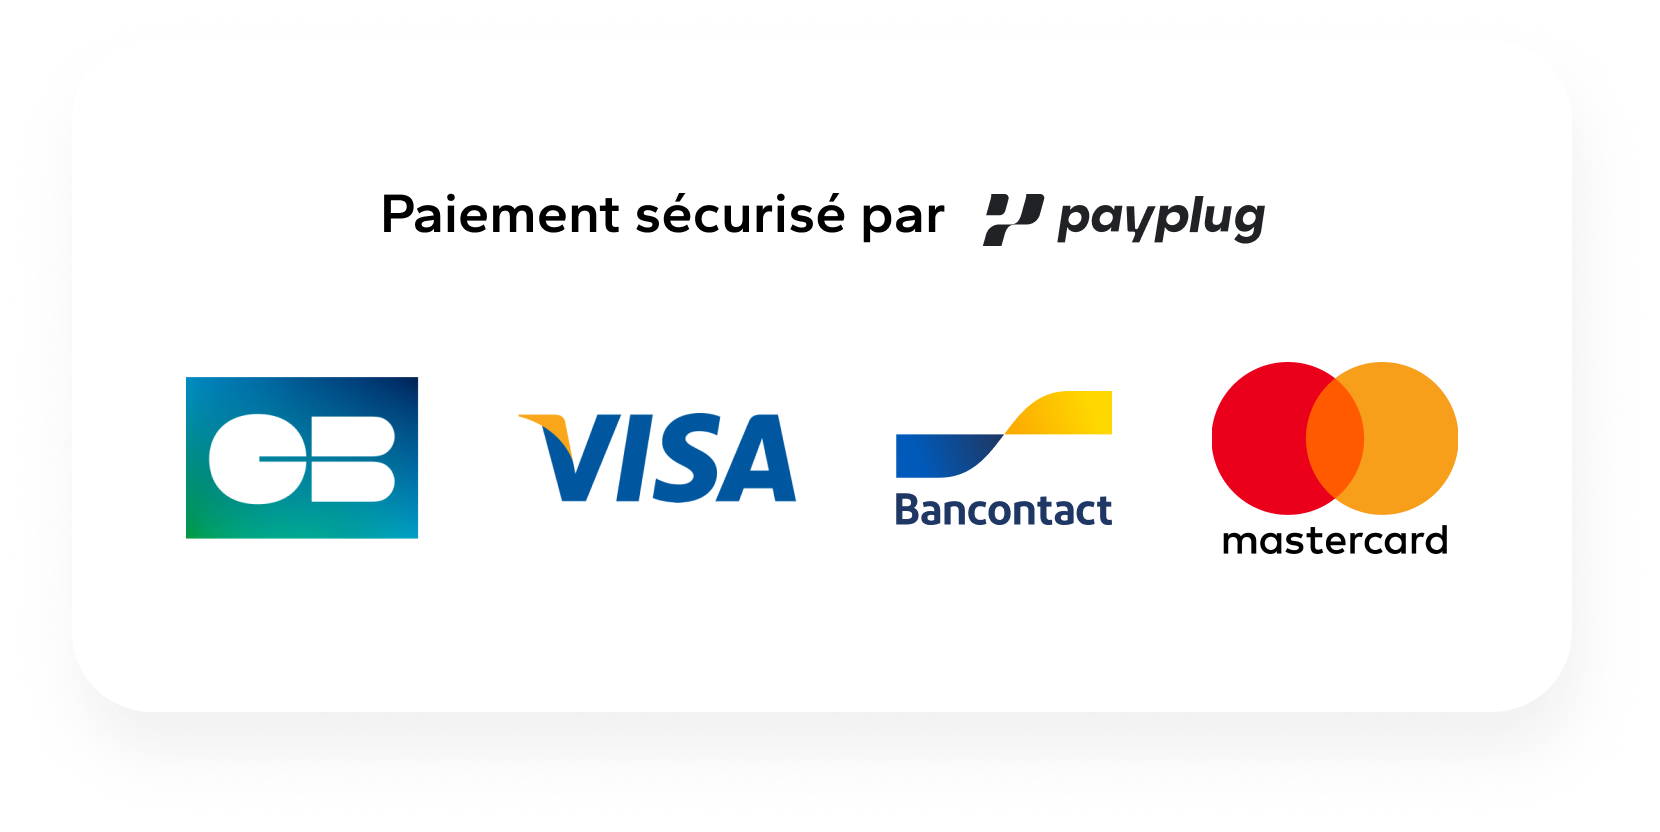 visa_CB_mastercard_bancontact_FR